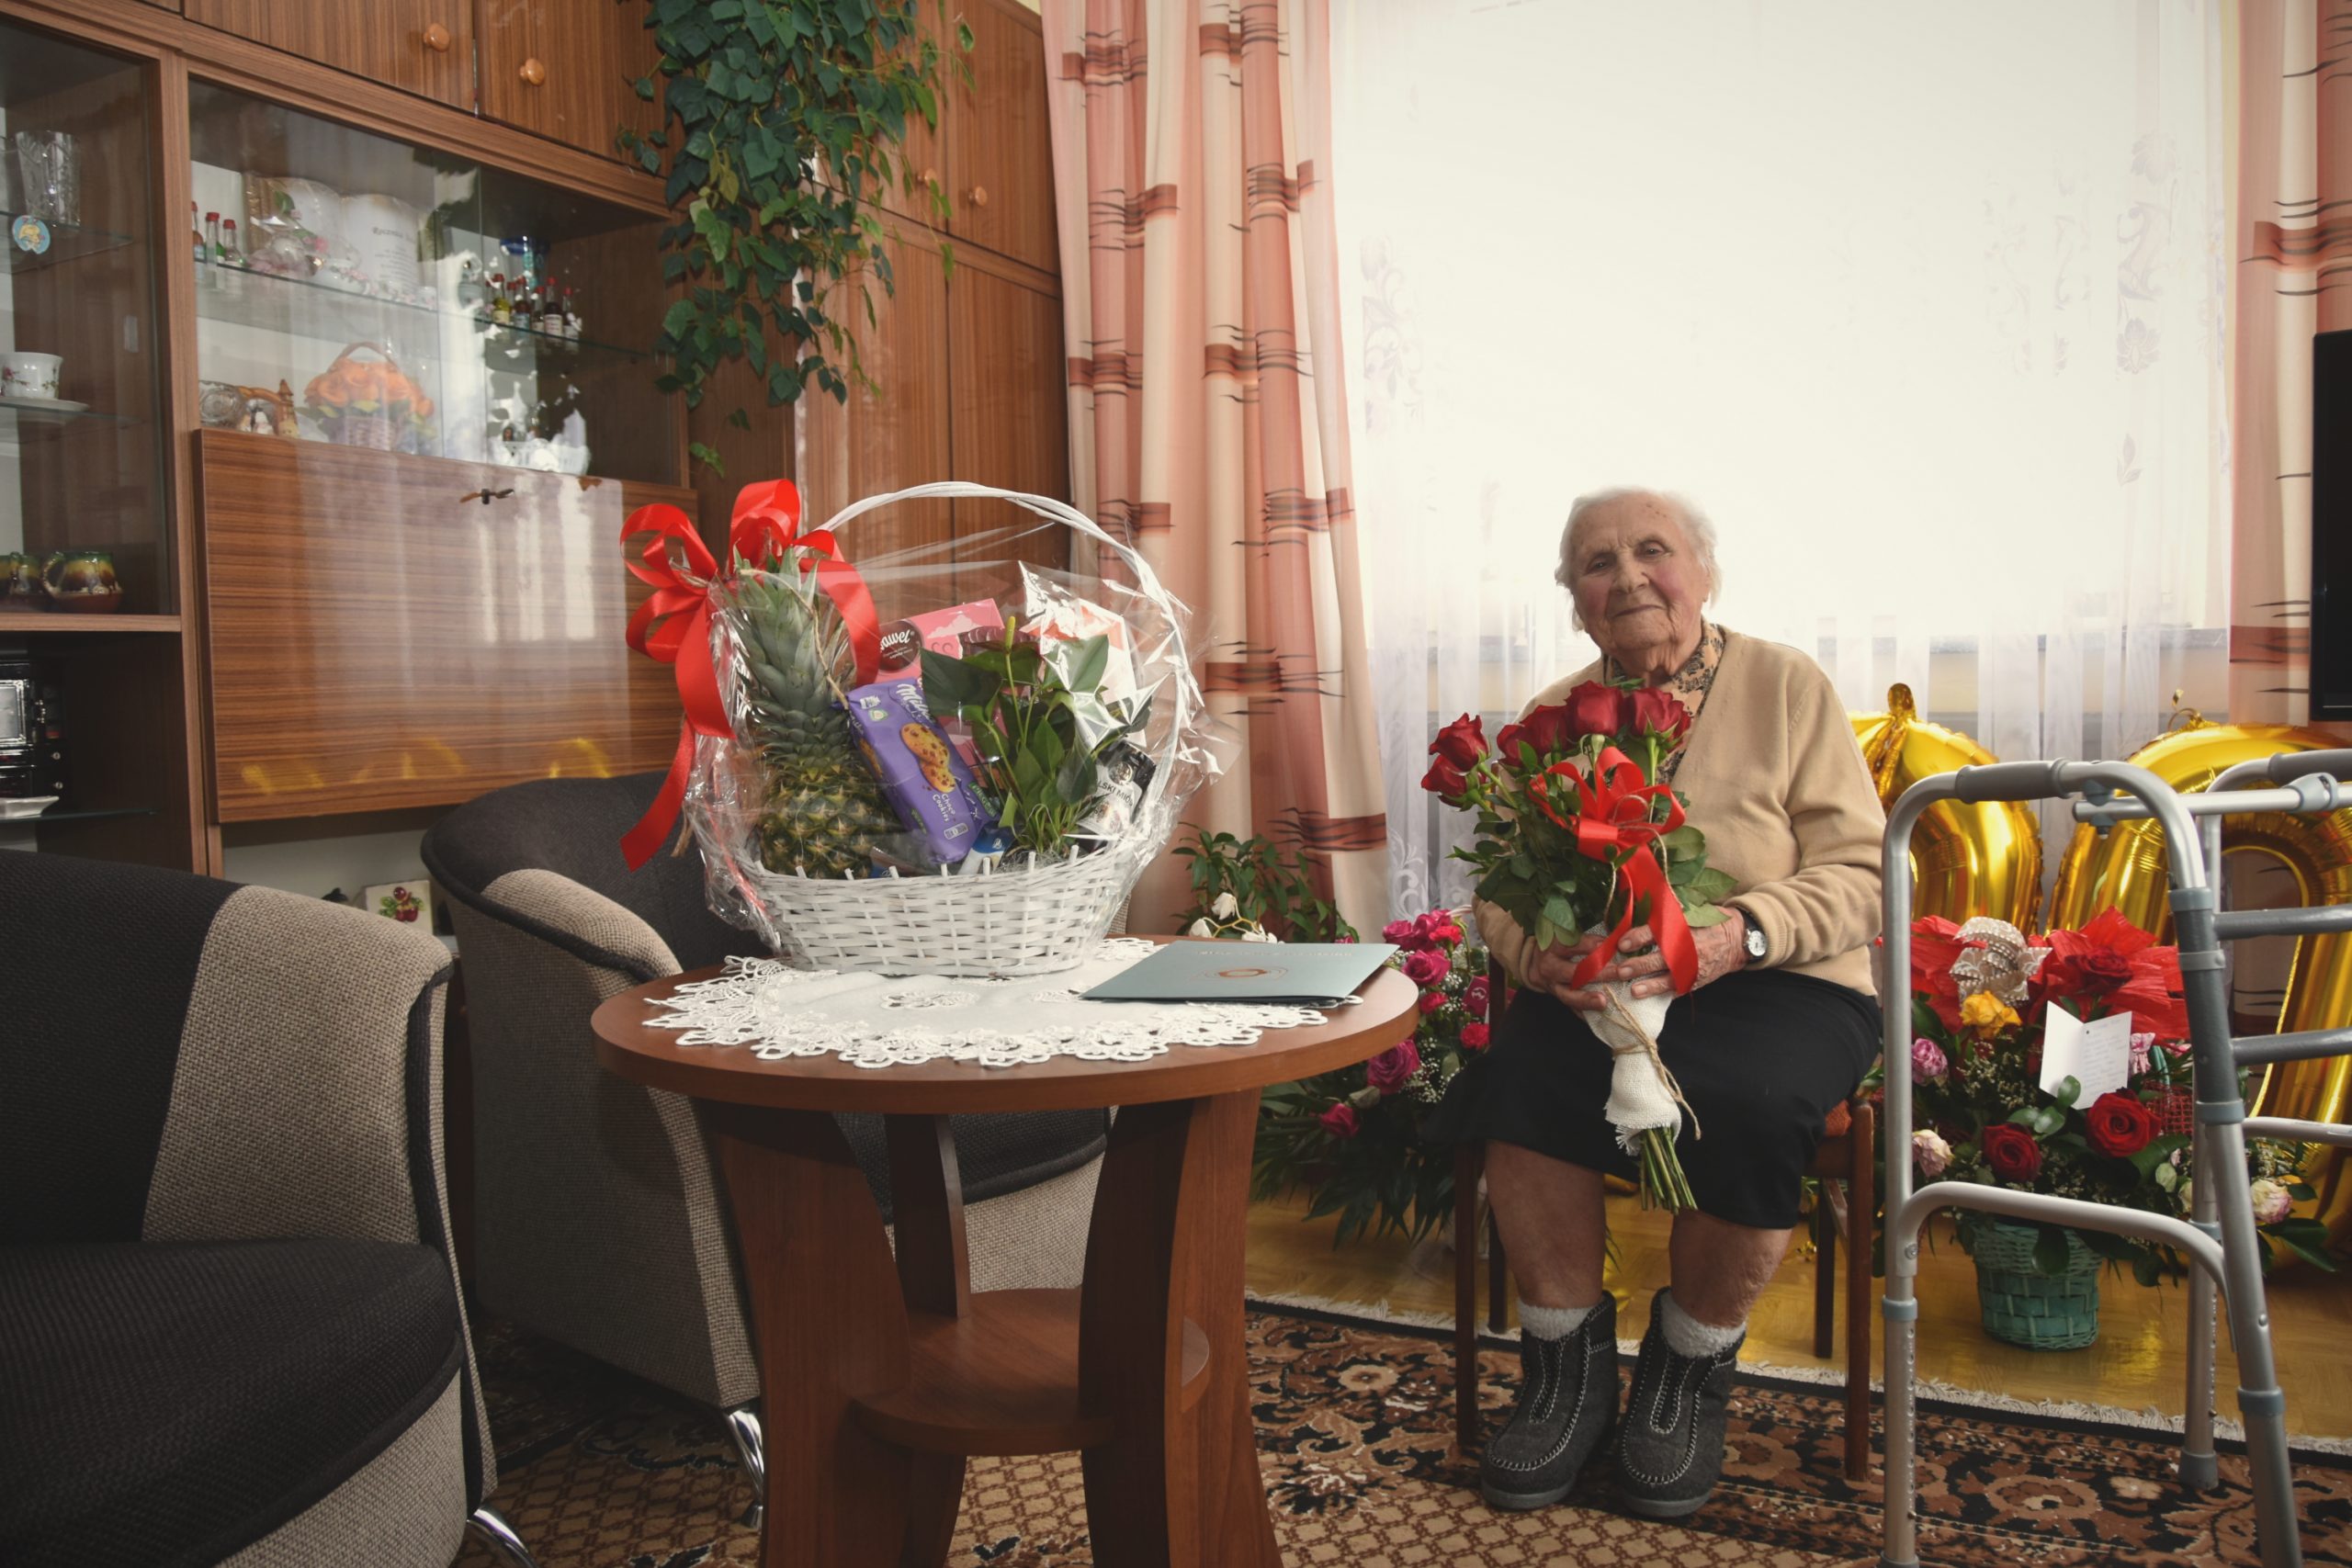 Uśmiechnięta, starsza pani z siwymi włosami ,znajdująca się po prawej stronie zdjęcia na tle zasłony, trzymająca czerwone róże. Na środku podarunki od urzędu miasta i gminy Brzozów.